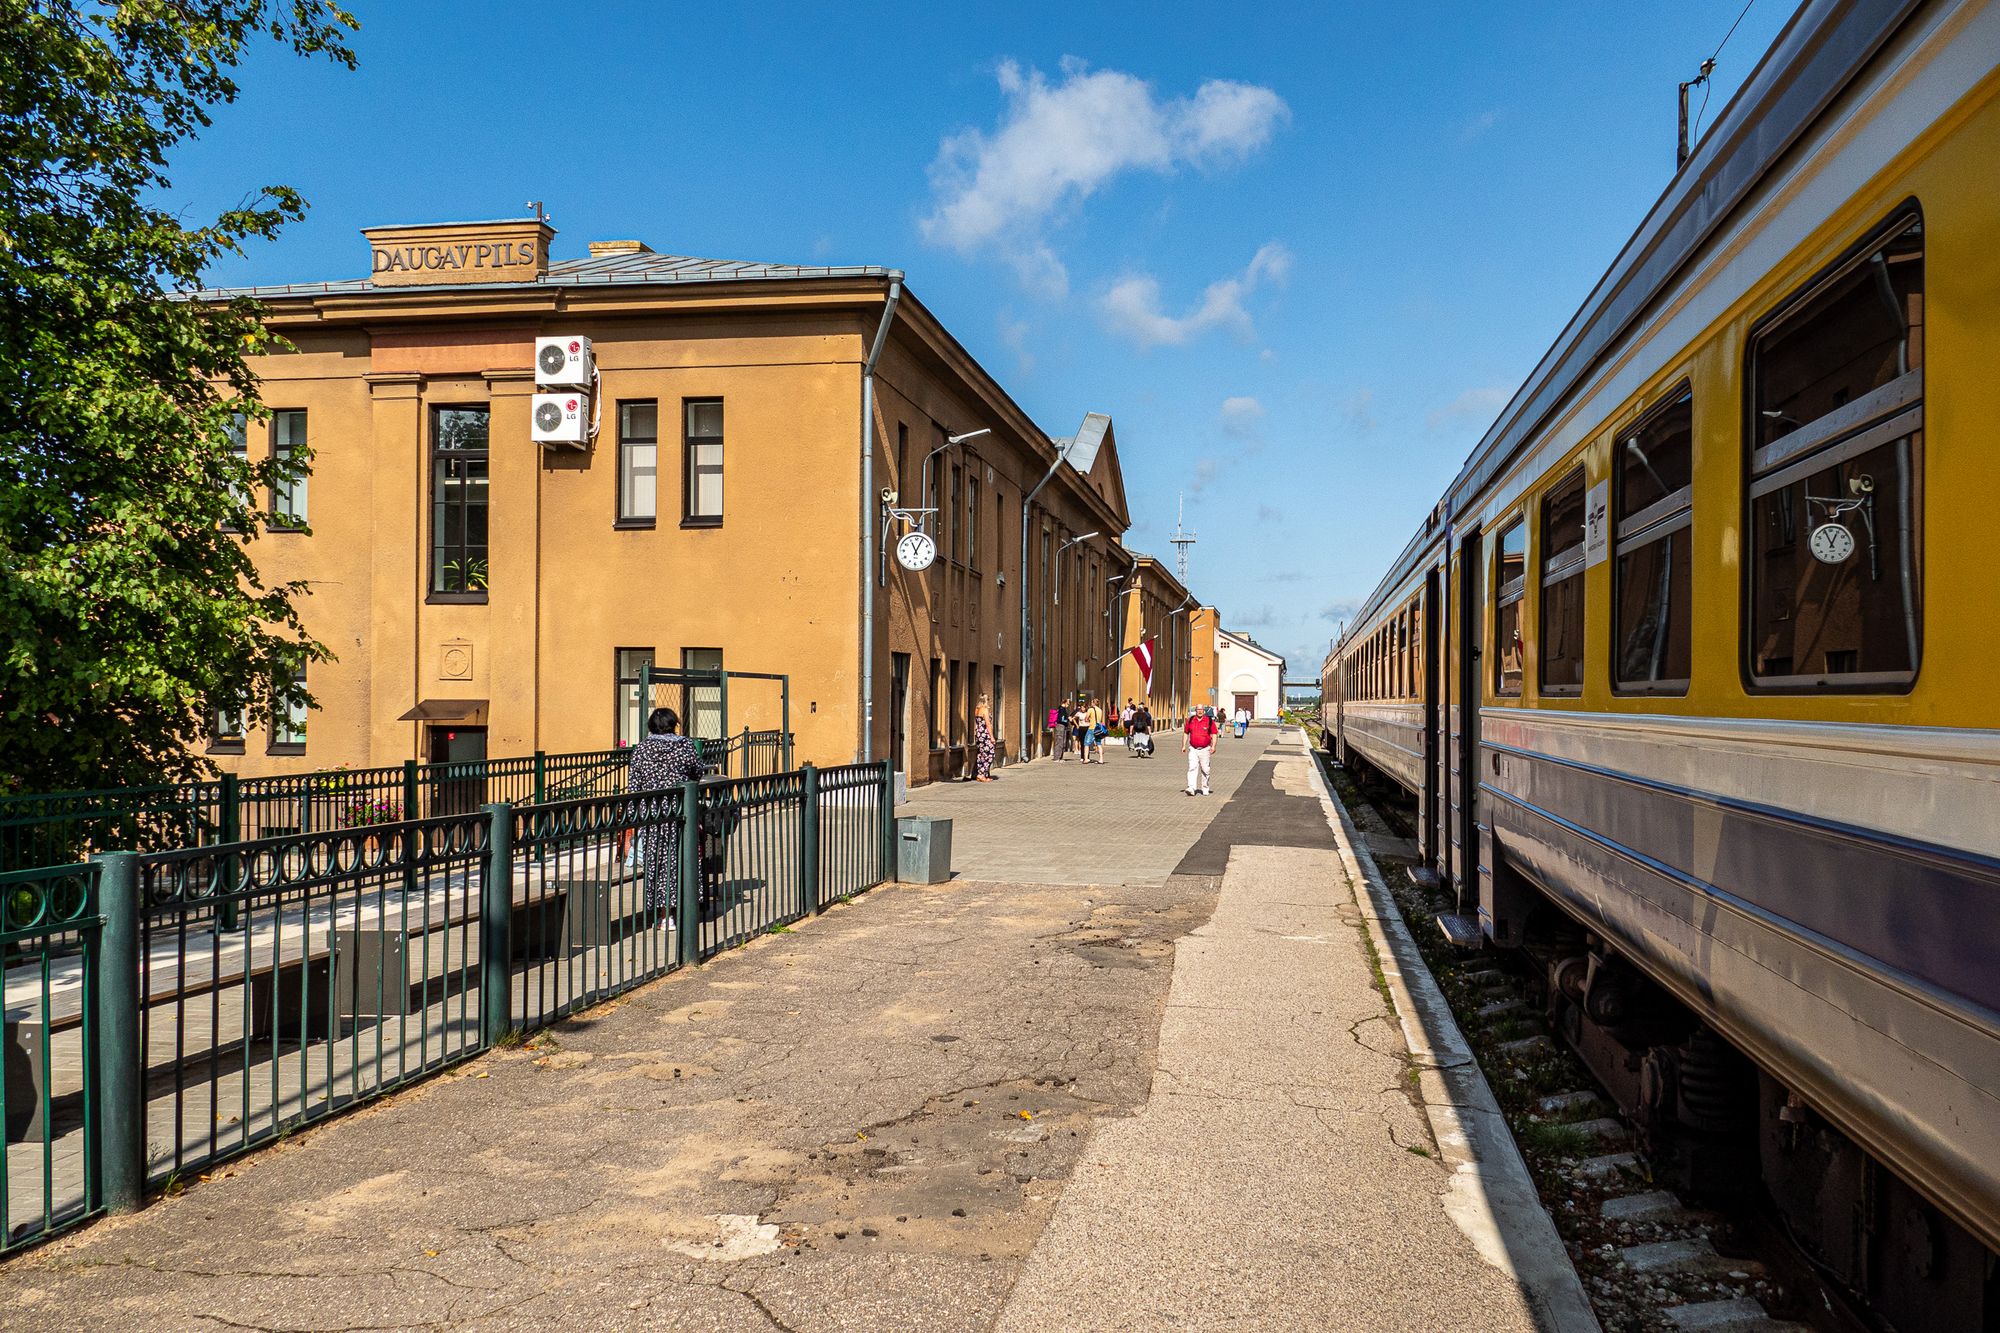 Bahnhof Daugavpils mit Bahnhofsgebäude, Zug und Bahnsteig